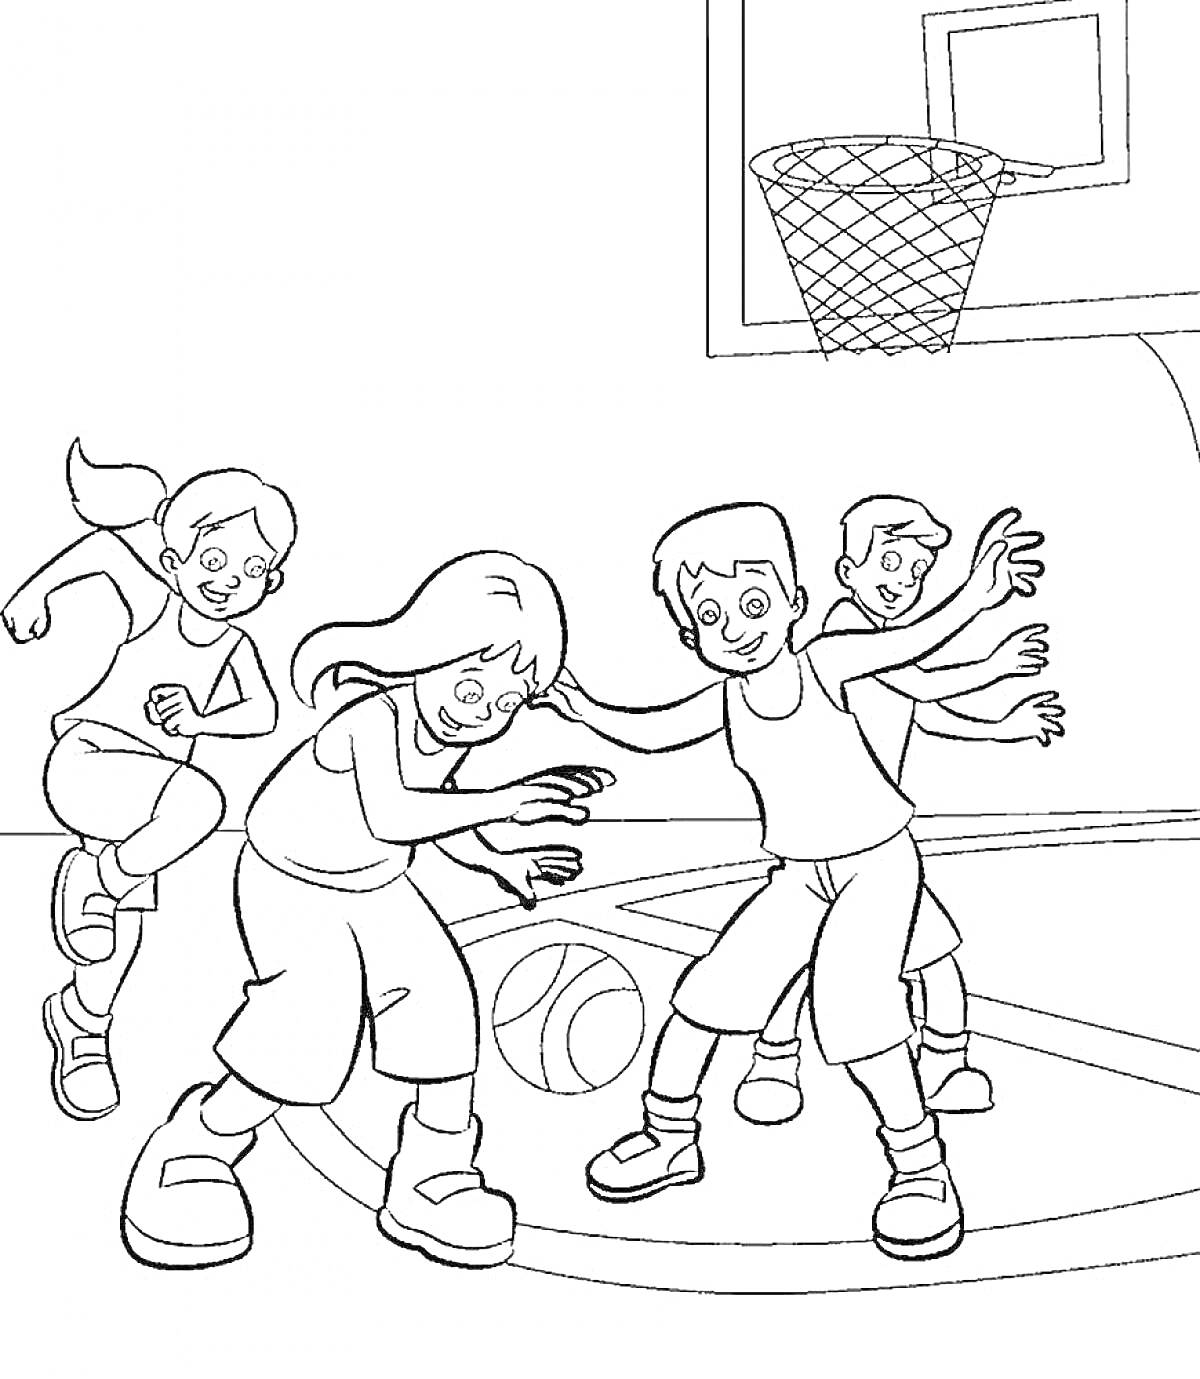 Раскраска Дети играют в баскетбол, баскетбольная площадка с кольцом, мяч